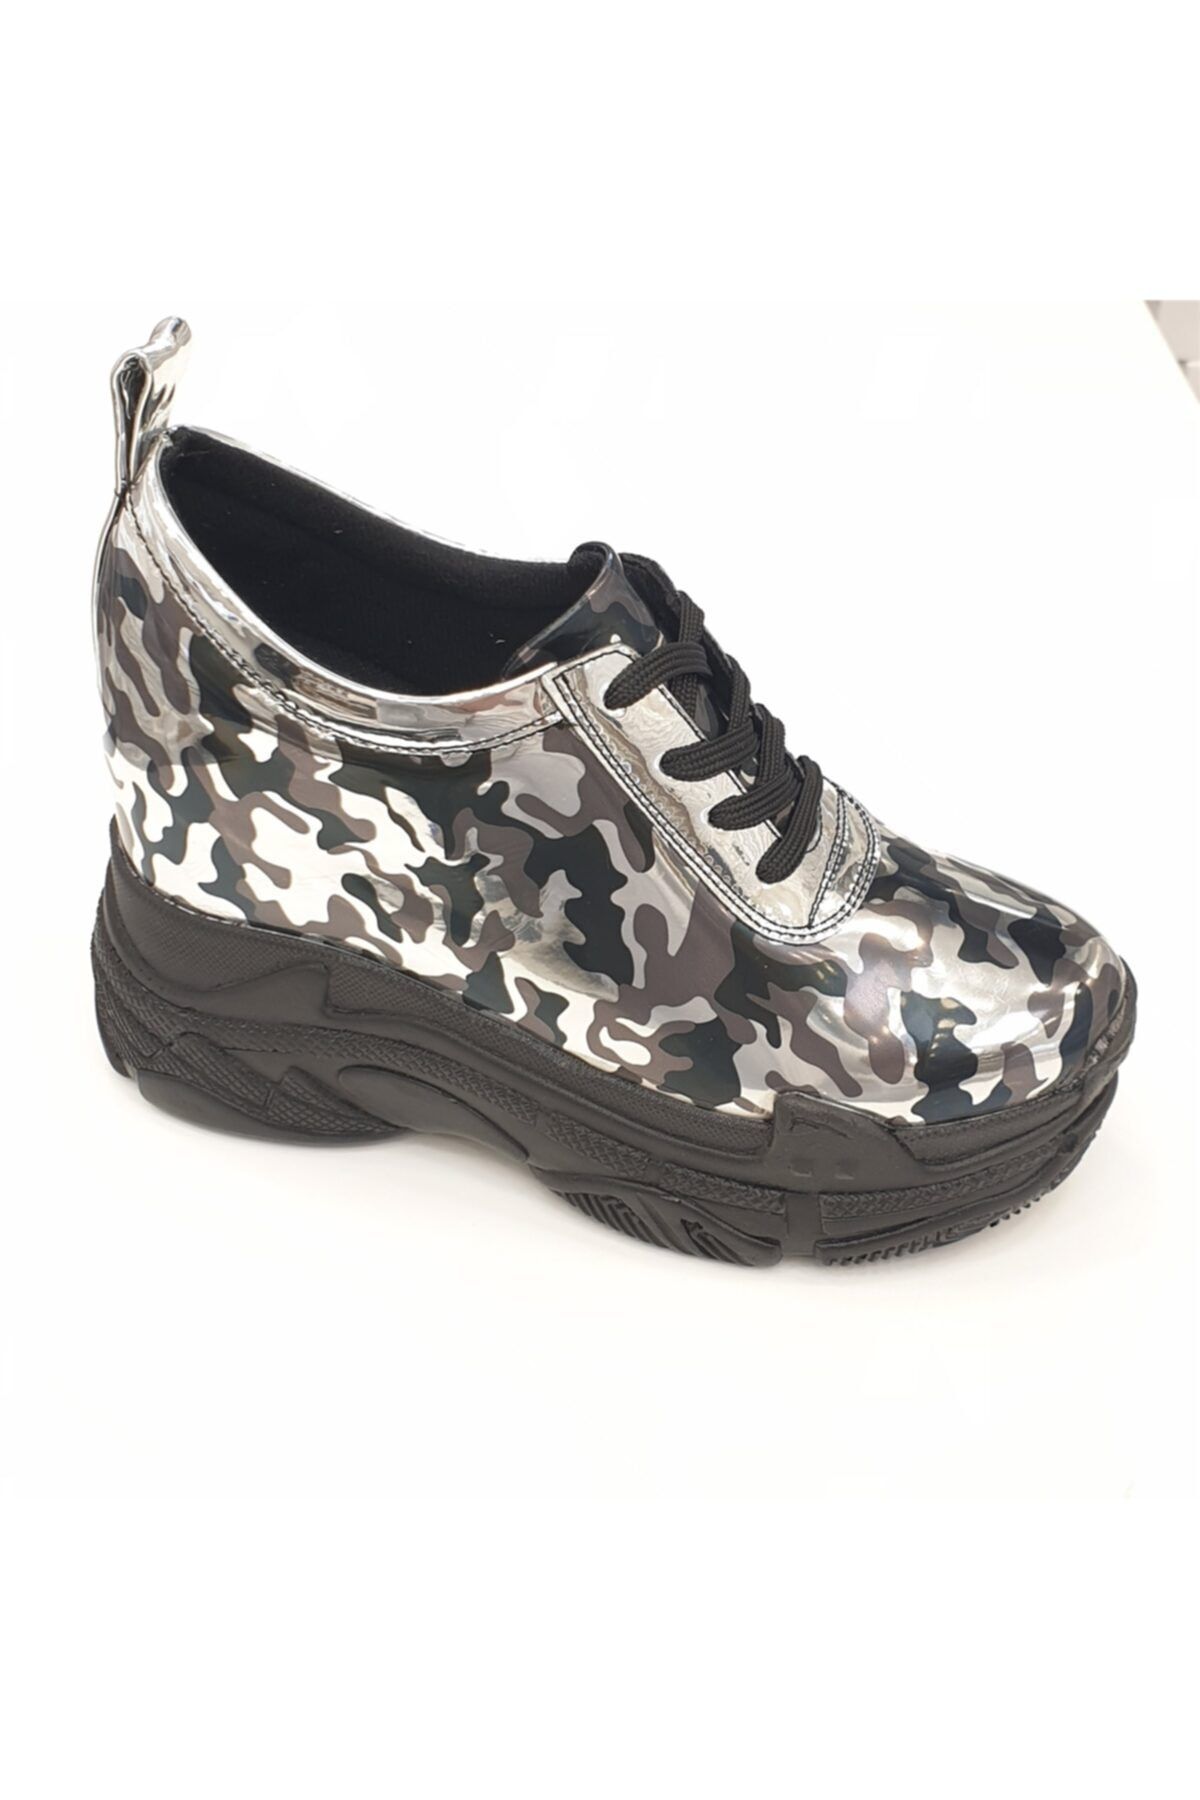 Ayakkabı Tutkusu Stilo ® Içten Gizli Topuk 10cm Dolgu Spor Ayakkabı